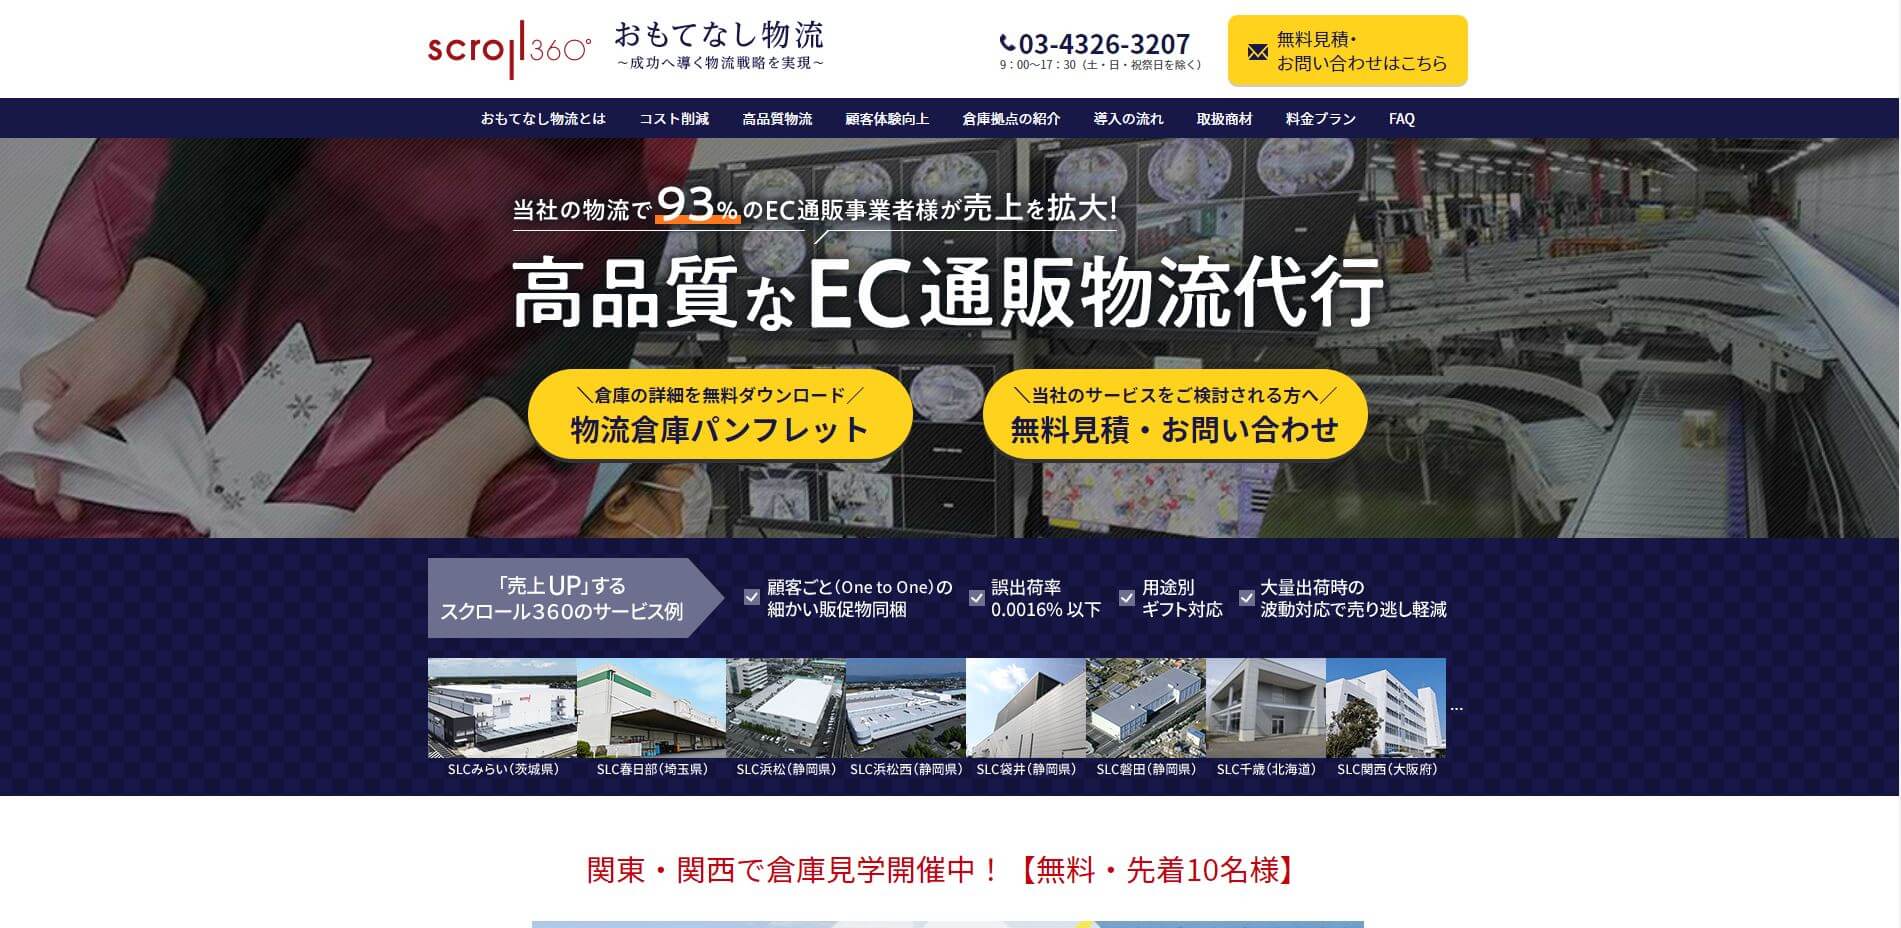 EC物流代行会社株式会社スクロール360公式サイトキャプチャ画像